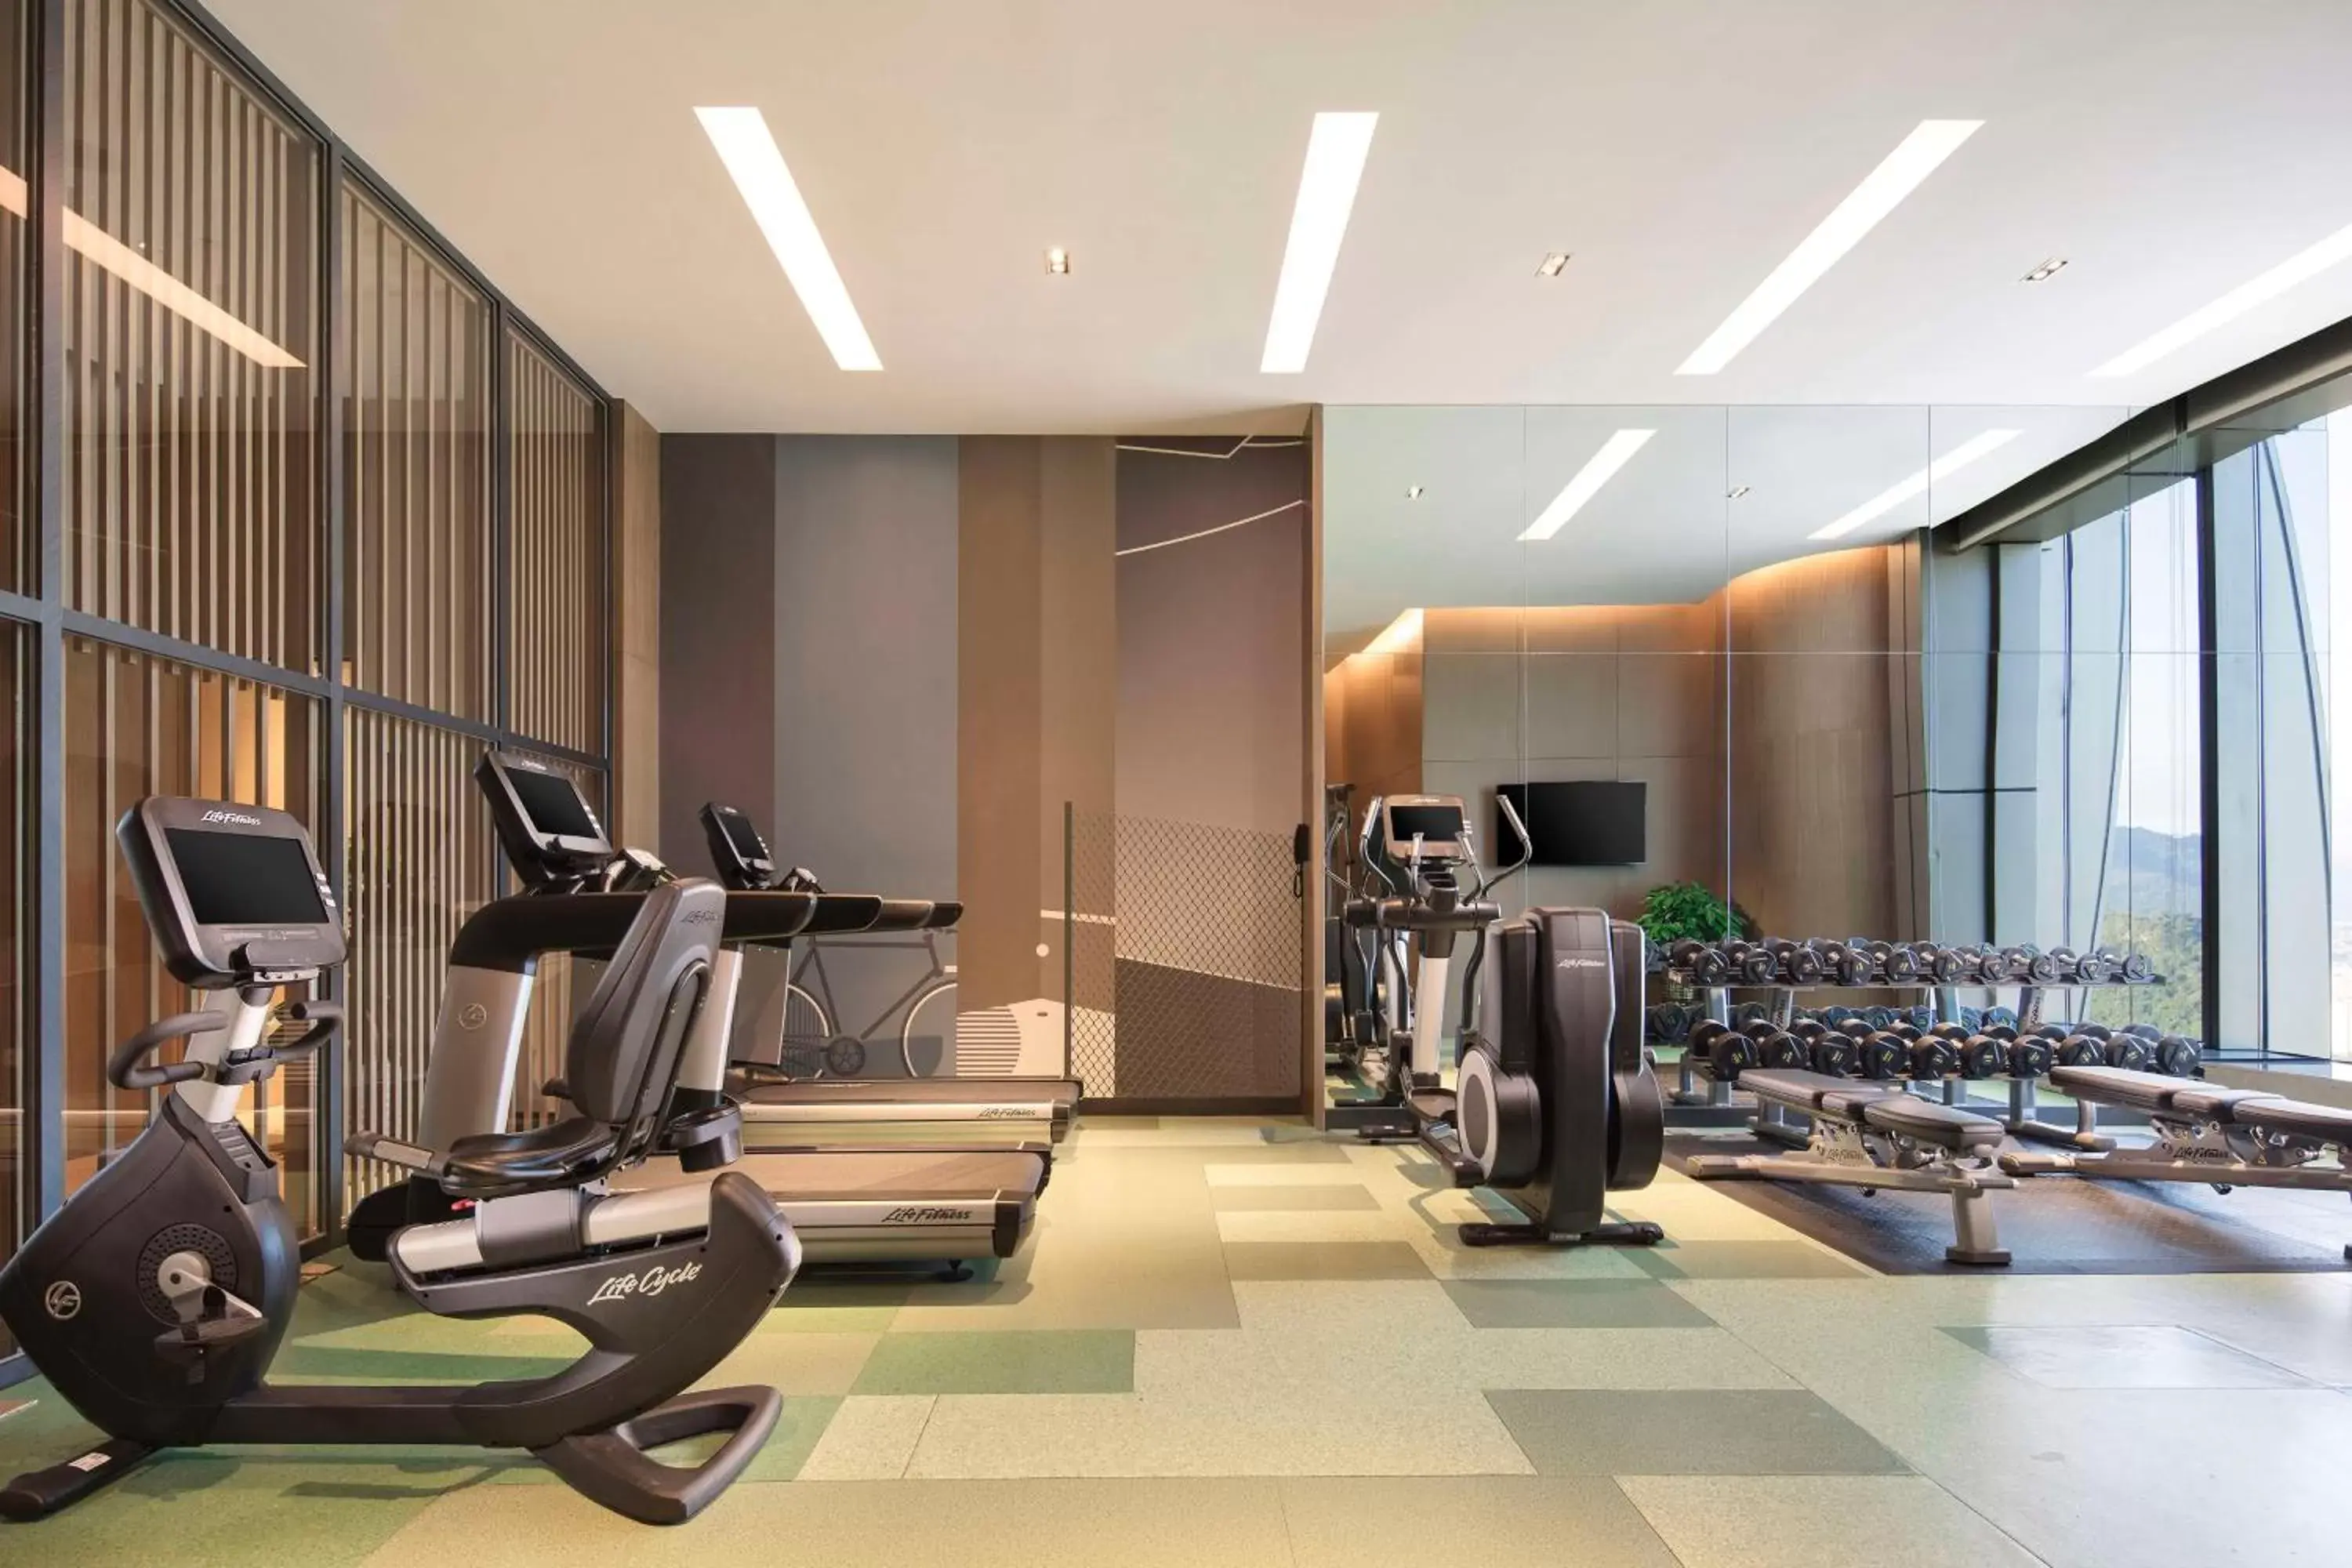 Fitness centre/facilities, Fitness Center/Facilities in Hyatt Place Sanya City Center